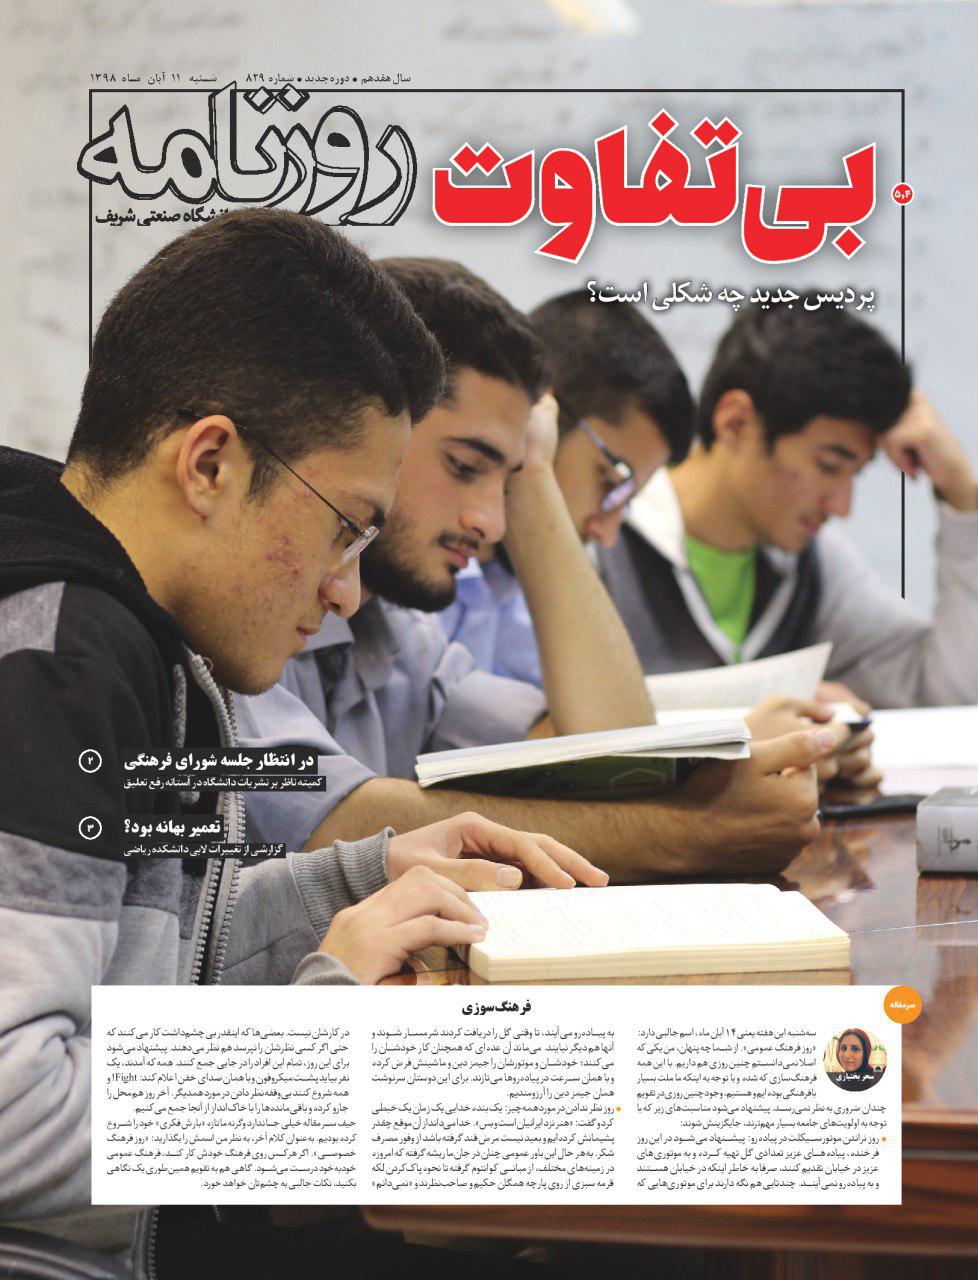 نگران برای تن رنجور دانشگاه! / شماره ۸۲۹ نشریه دانشجویی «روزنامه شریف» منتشر شد